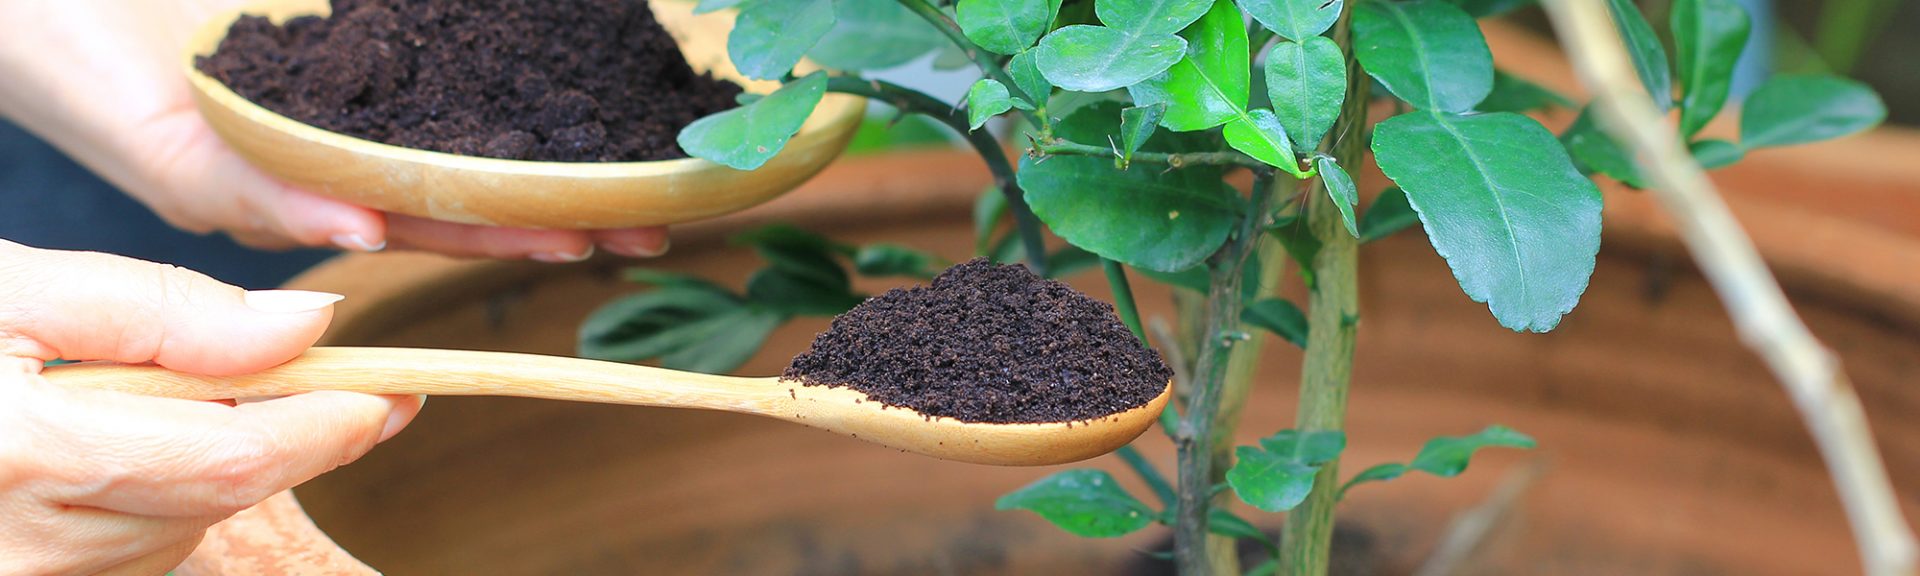 les résidus de café sont appliqués sur l'arbre et constituent un engrais naturel